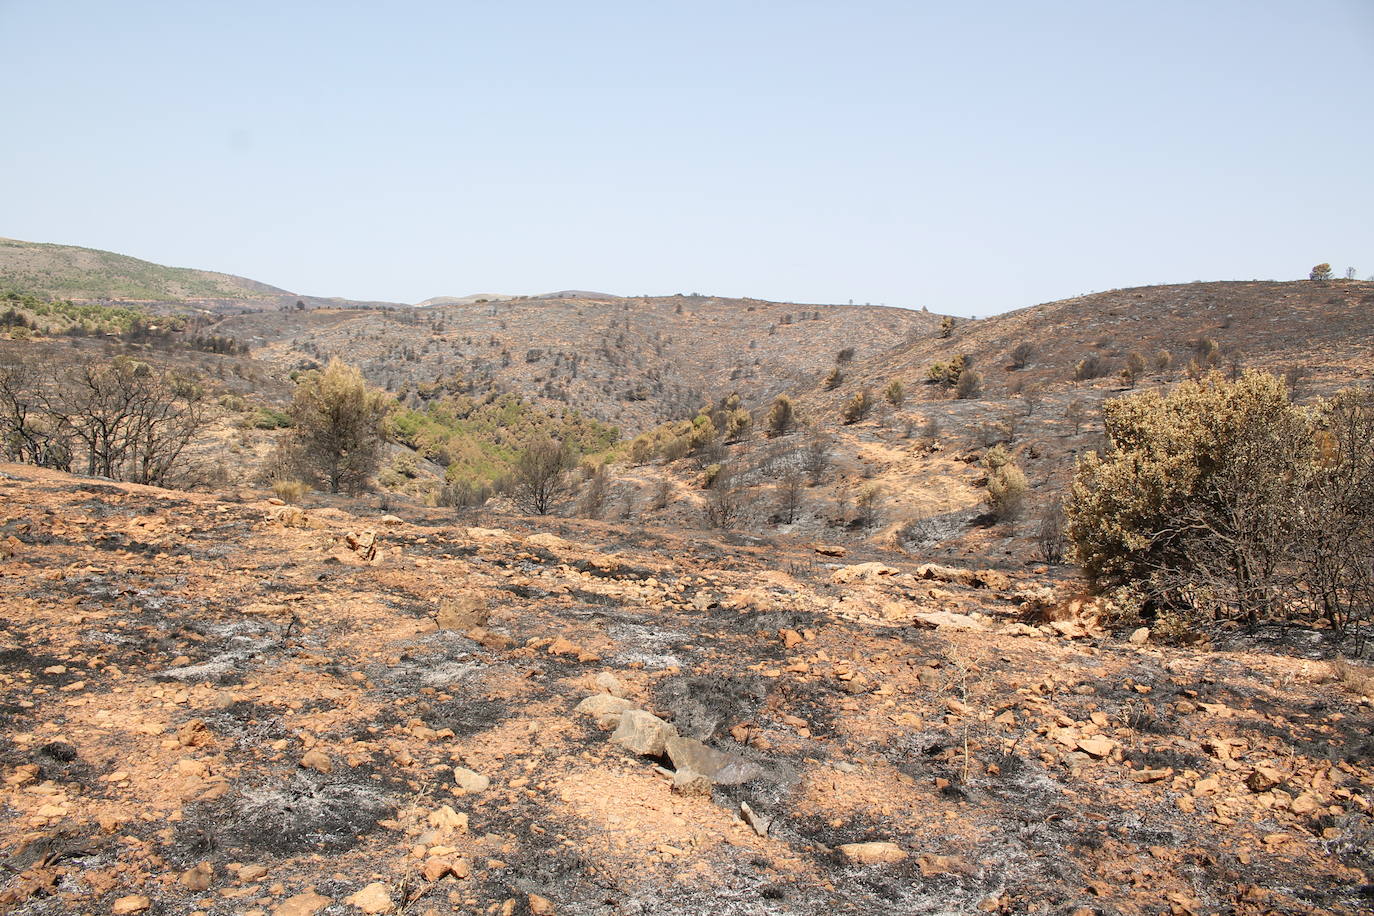 La Junta estudia cómo recuperar las 1.200 hectáreas quemadas y promete invertir el 100% de los recursos económicos